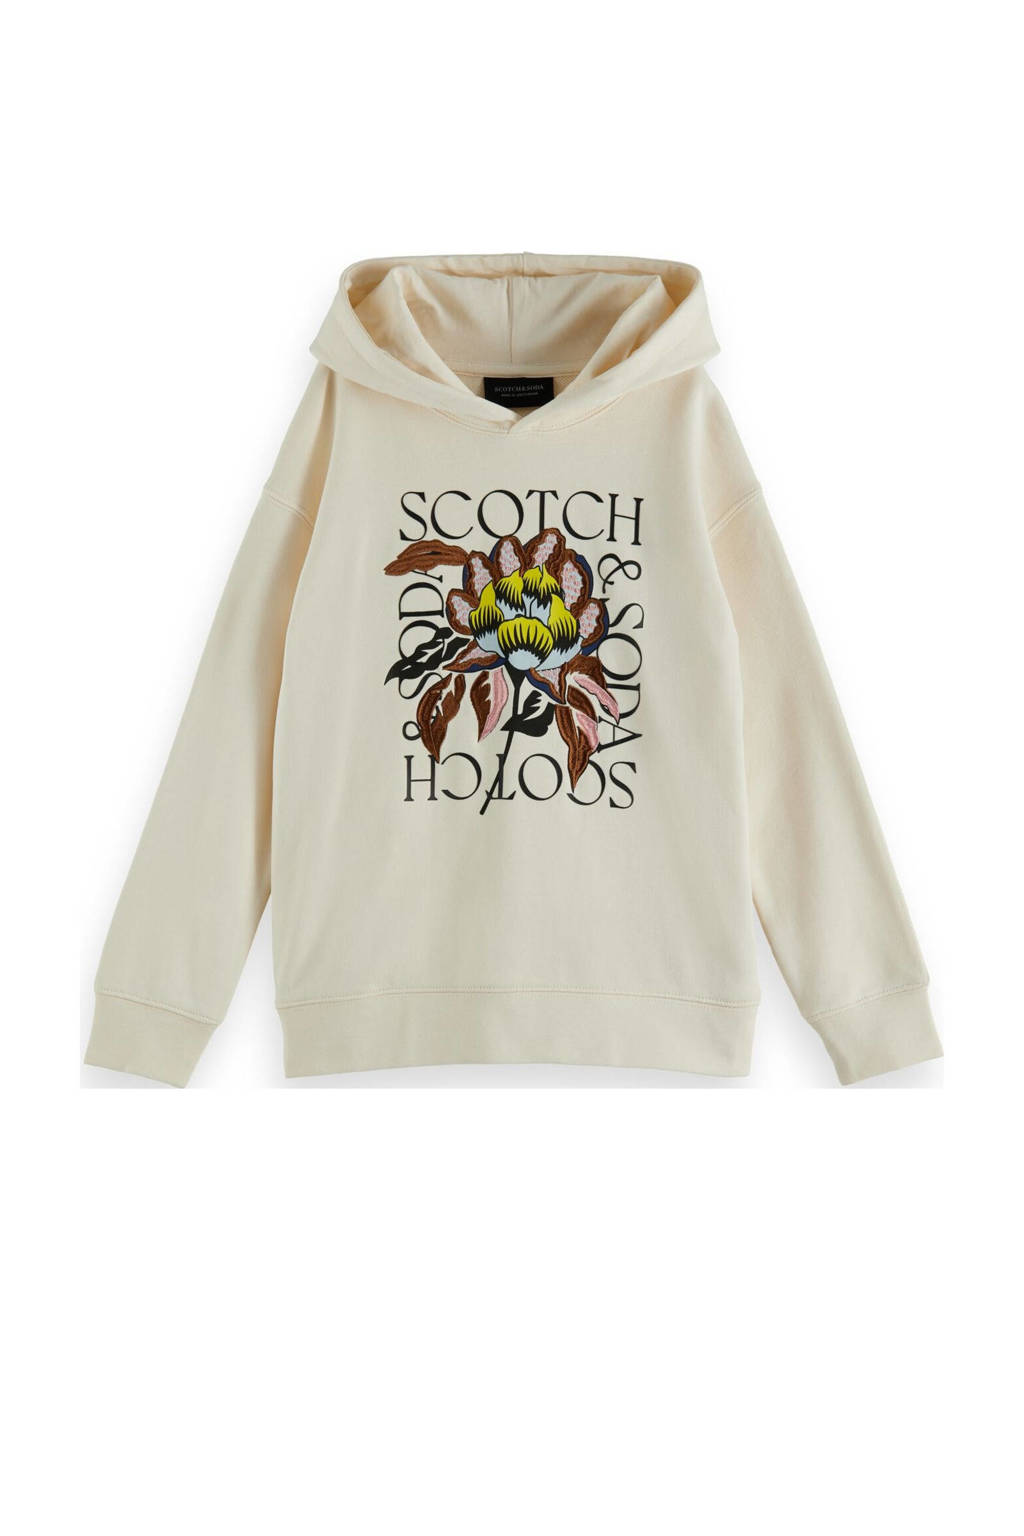 Witte meisjes Scotch & Soda hoodie van sweat materiaal met printopdruk, lange mouwen, capuchon en geribde boorden